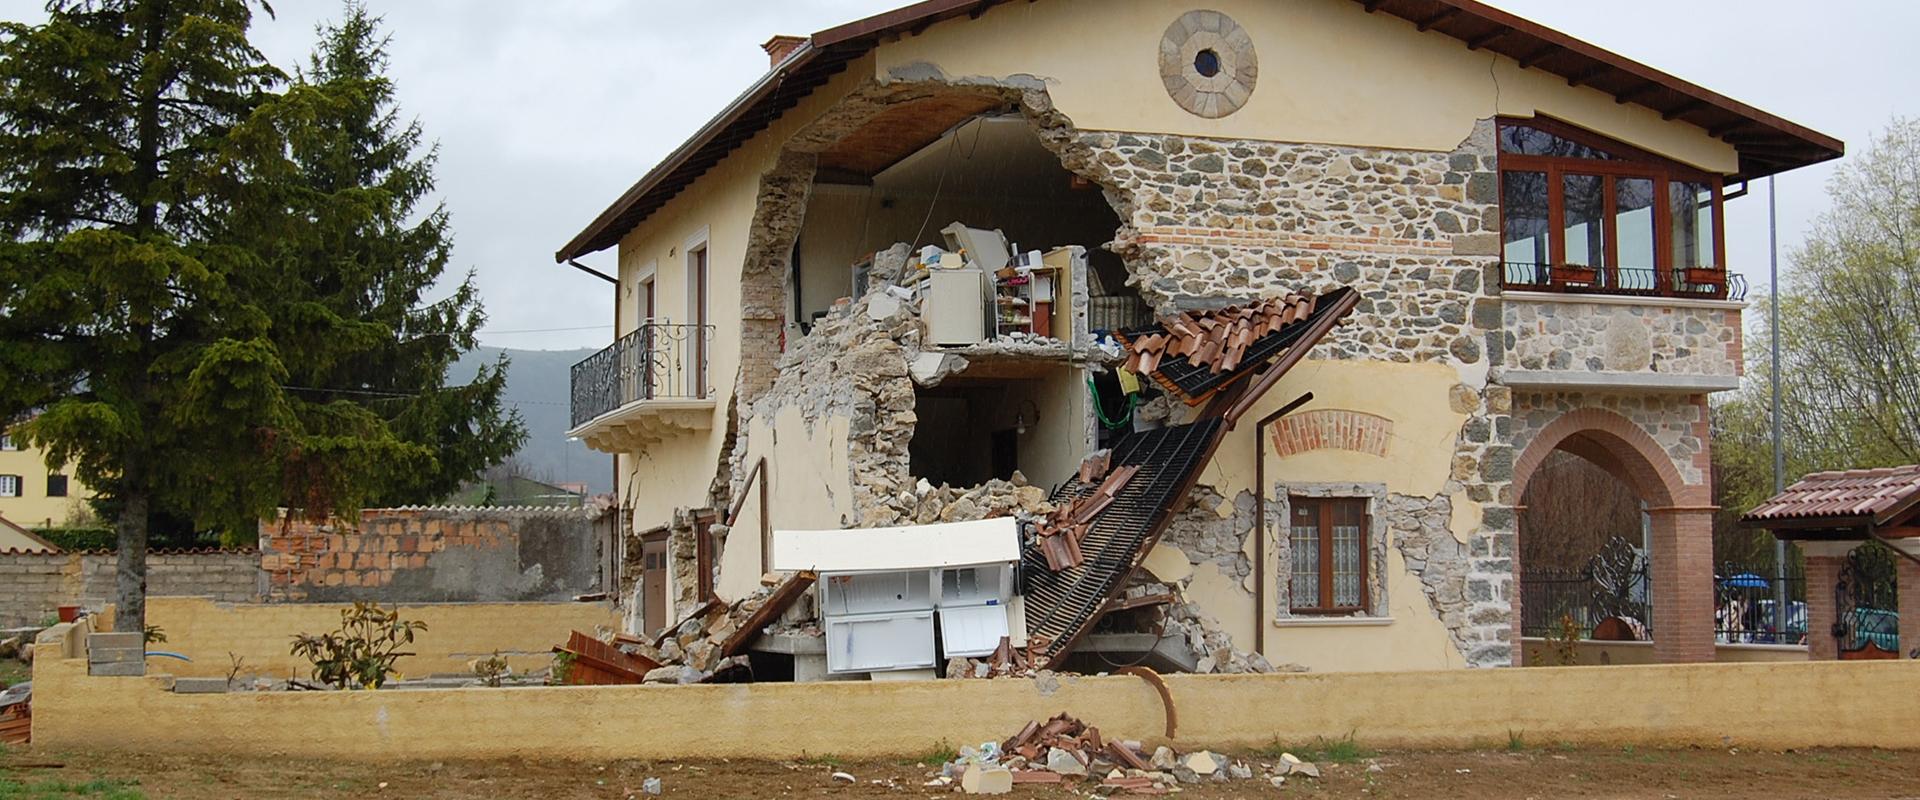 Exemple de dégâts - séisme de l'Aquila, Italie